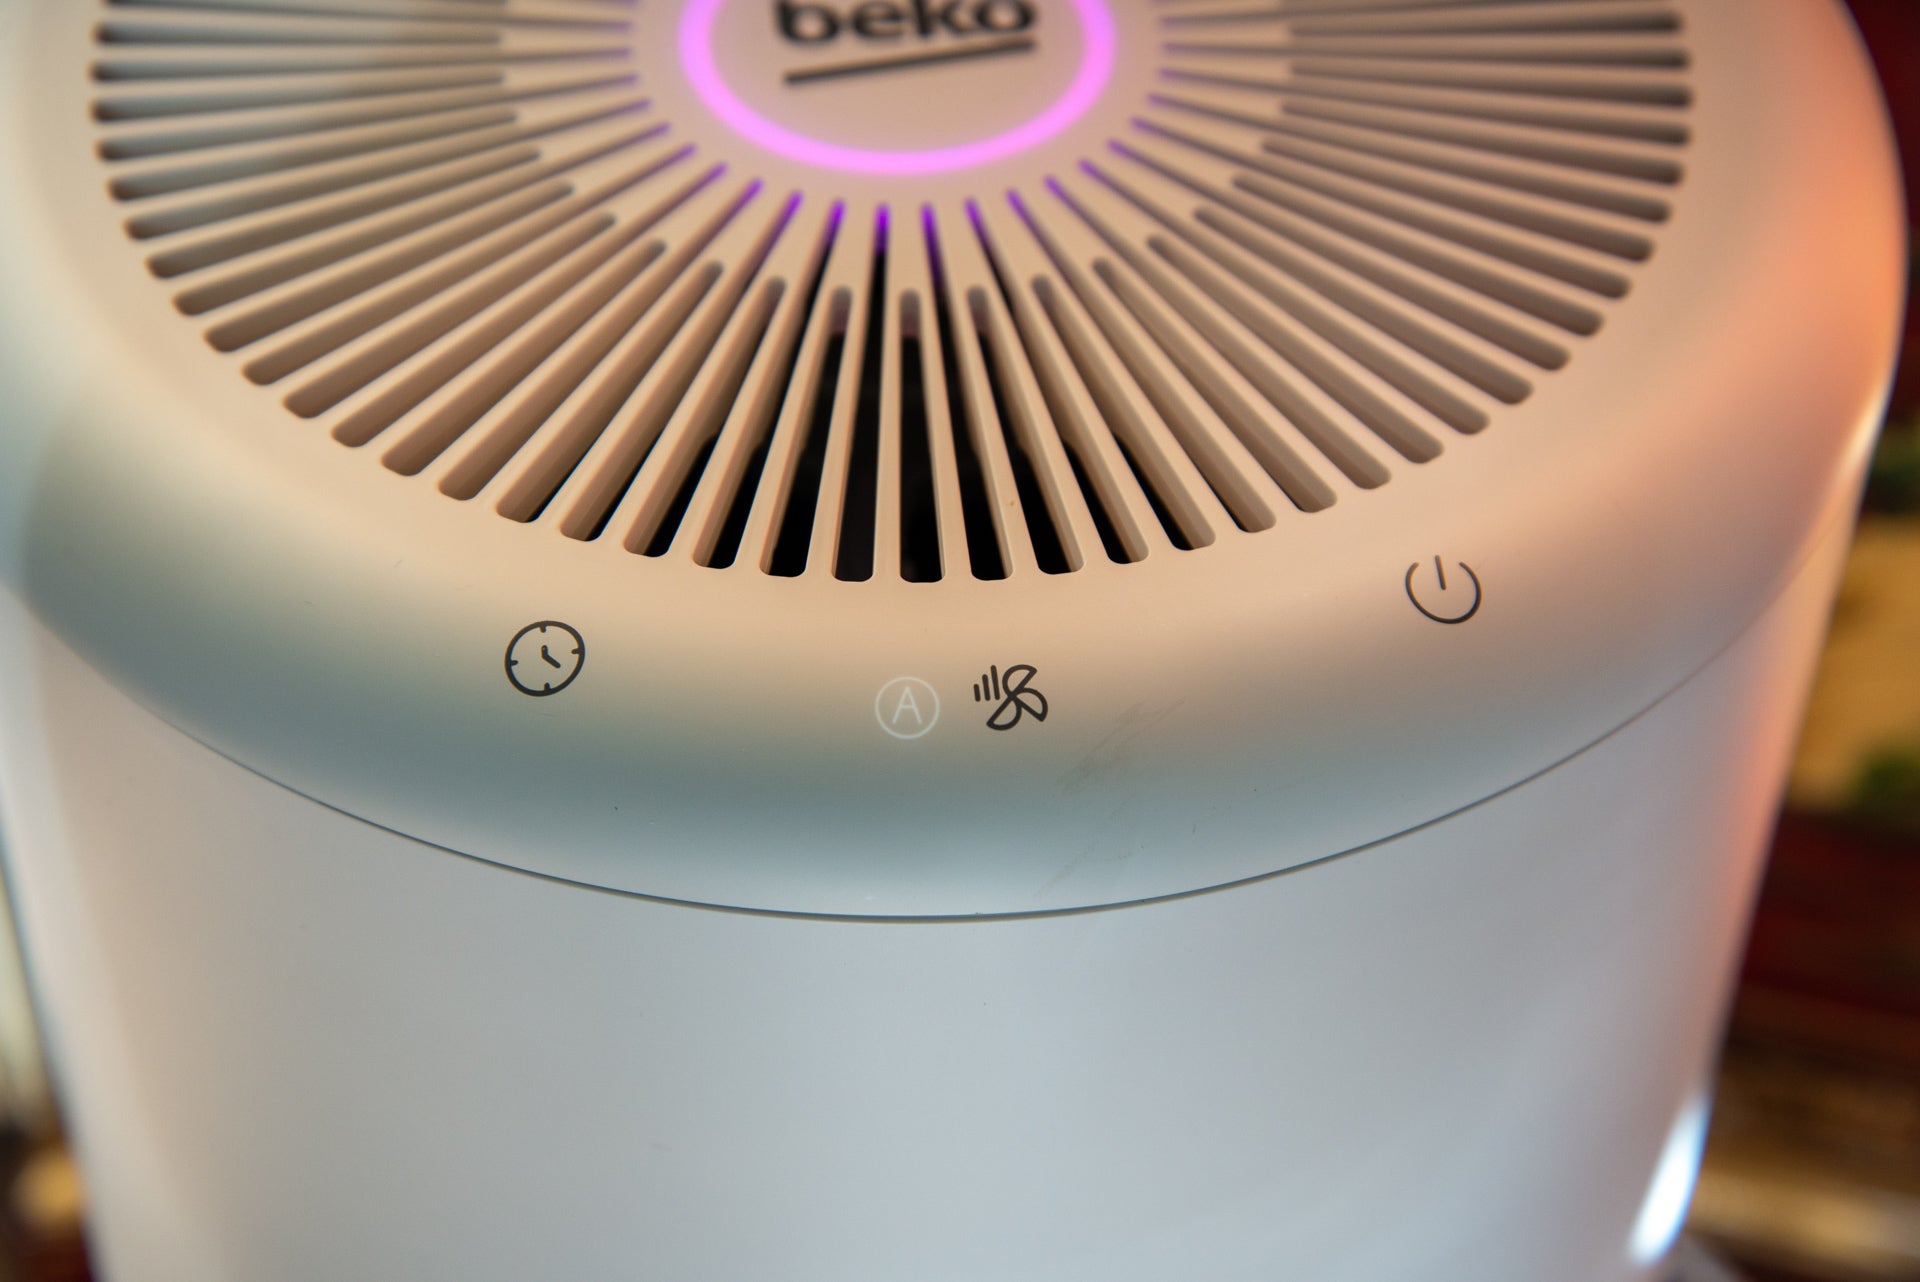 Purificador de aire Beko con filtro HEPA y controles HygieneShield ATP6100I